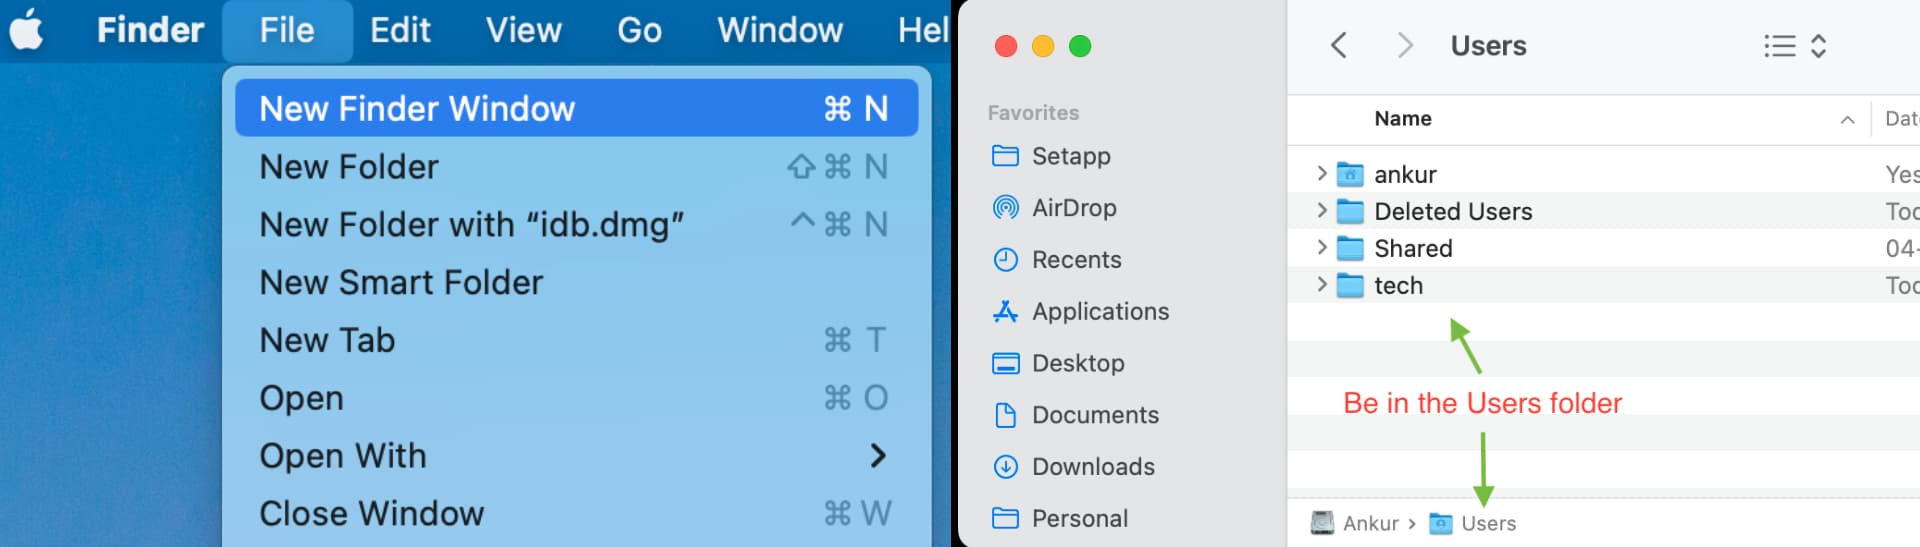 Open Mac Users folder in a new Finder window